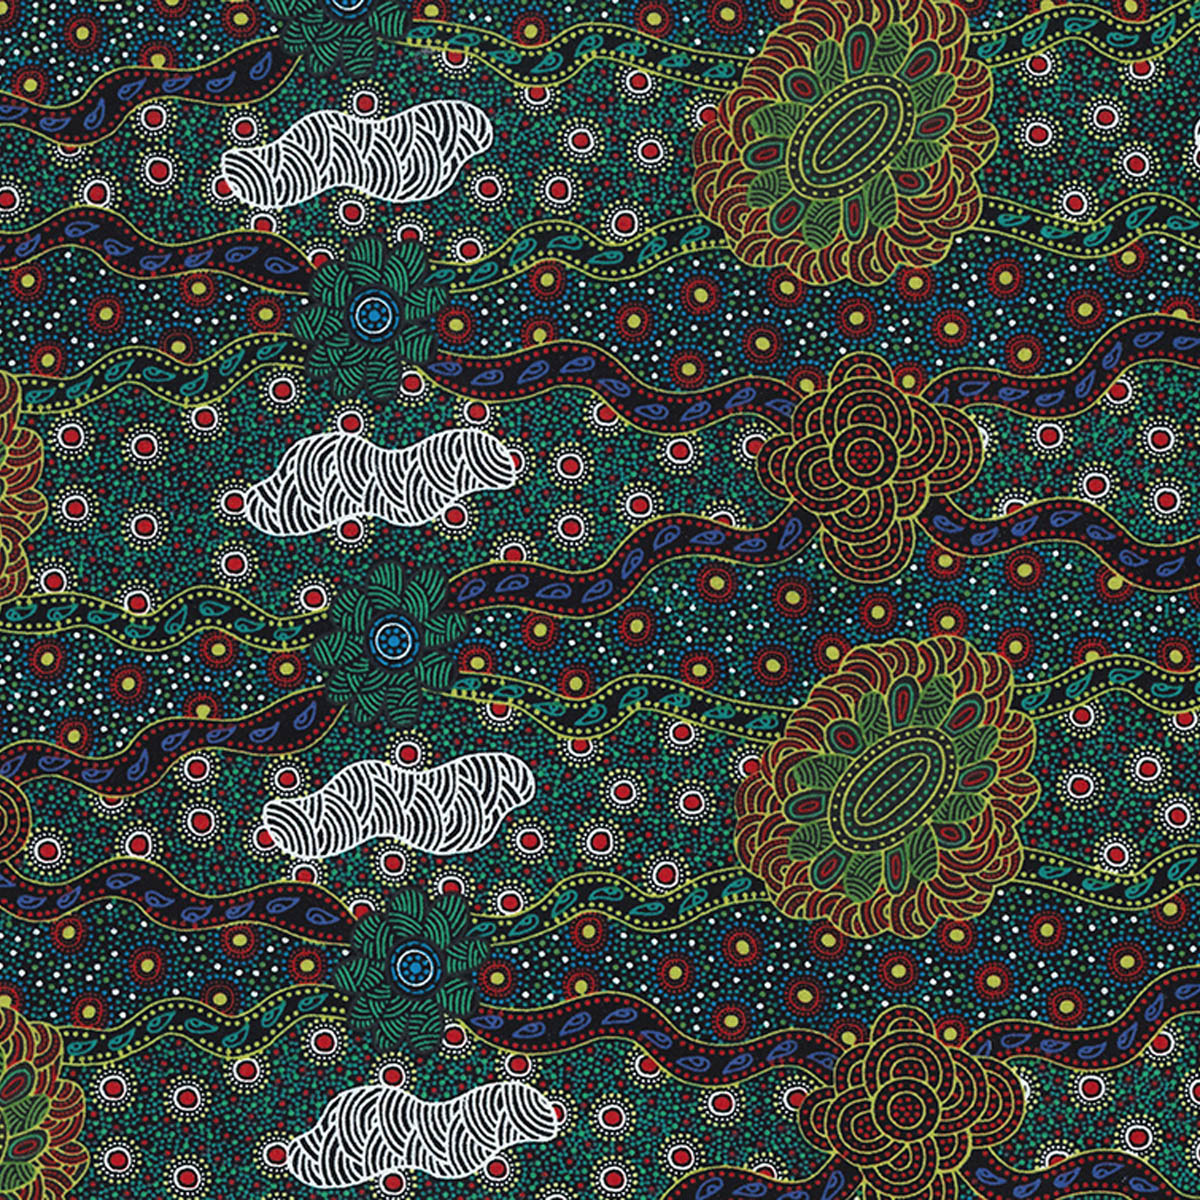 LILLUP DREAMING GREEN by Aboriginal Artist KAREN BIRD